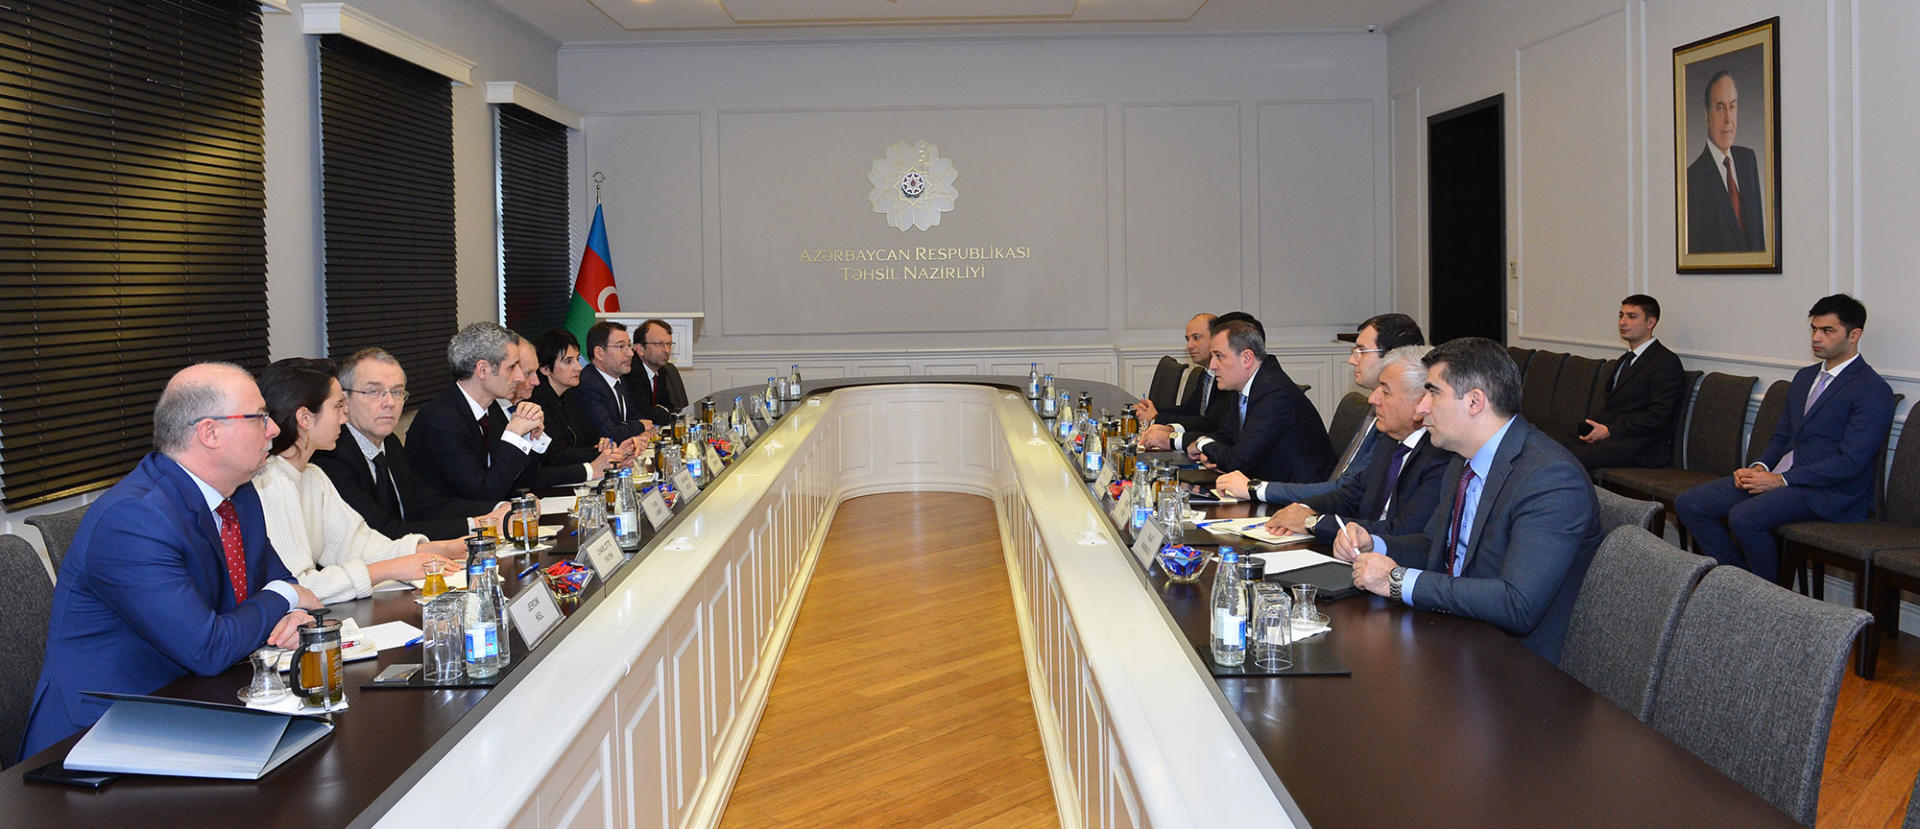 В Азербайджано-Французском университете (UFAZ) будет осуществляться прием в магистратуру (ФОТО)